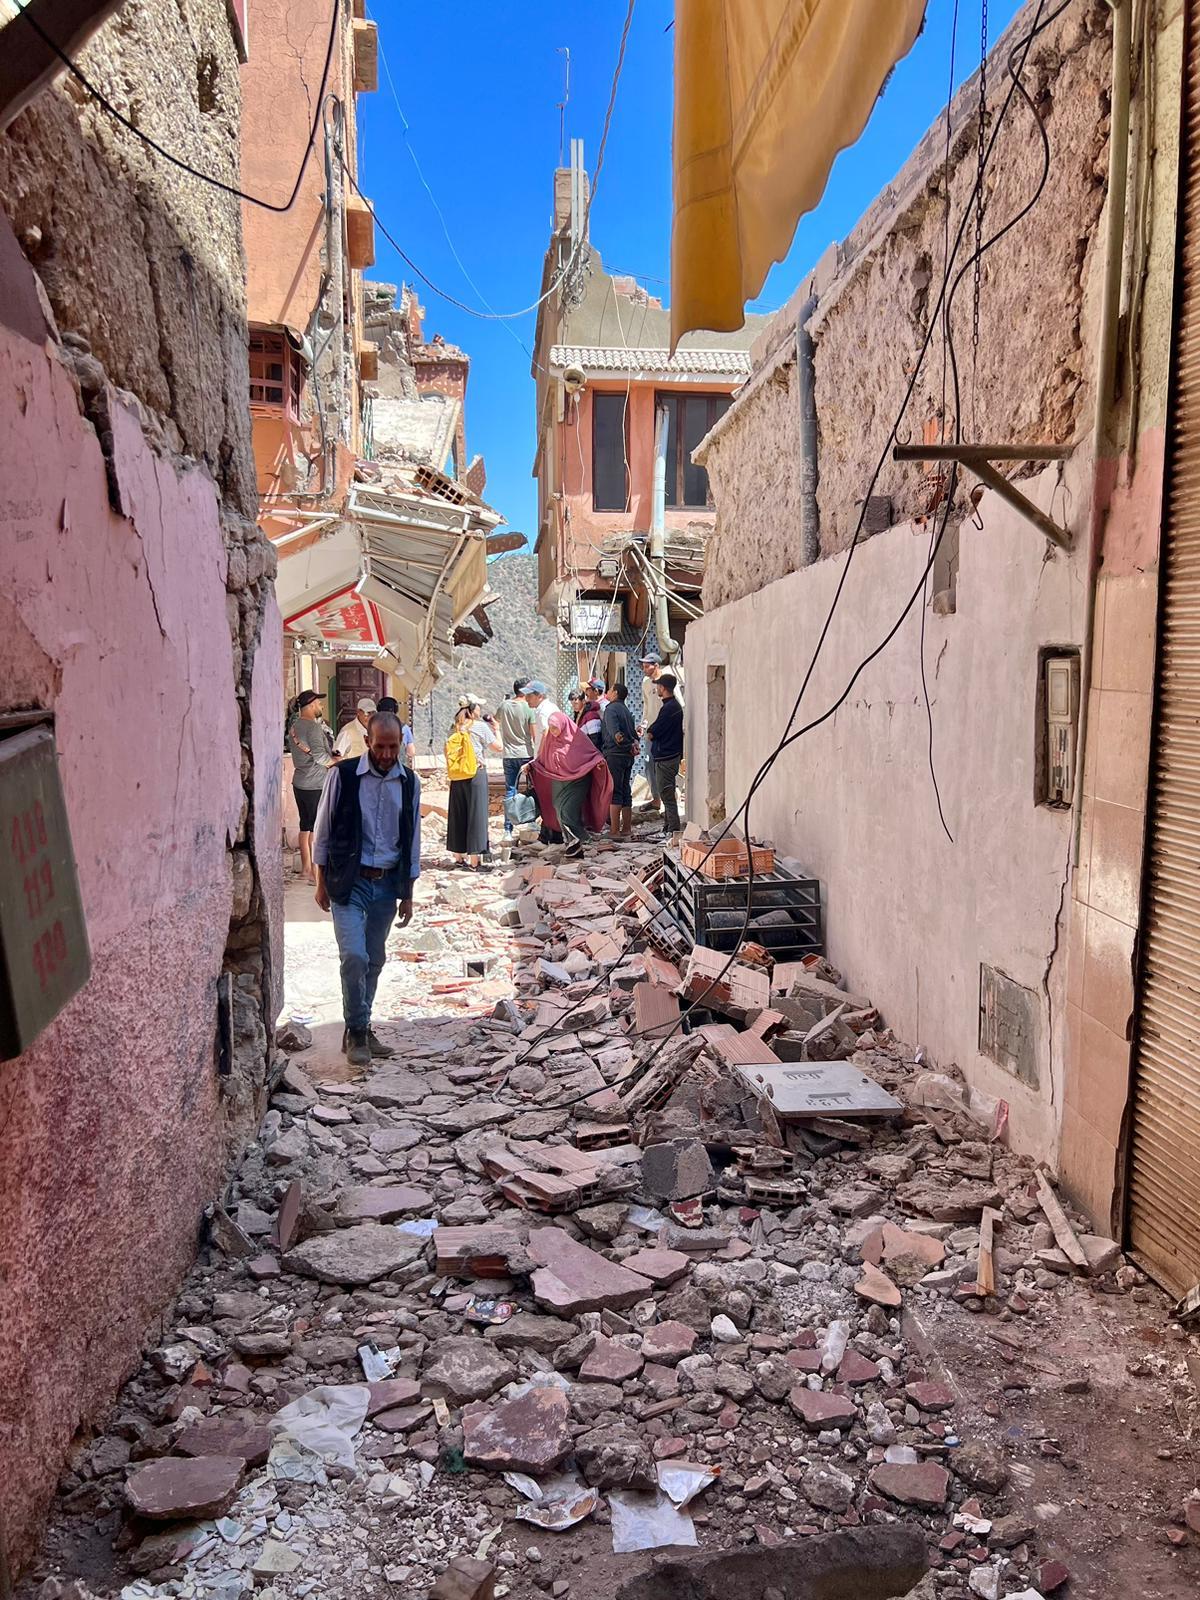 La solidarité s'est organisée dans les villages marocains victimes du séisme, alors que de nombreux habitants n'ont plus de toit sur la tête et manquent de vivres [RTS - Virginie Gerhard]